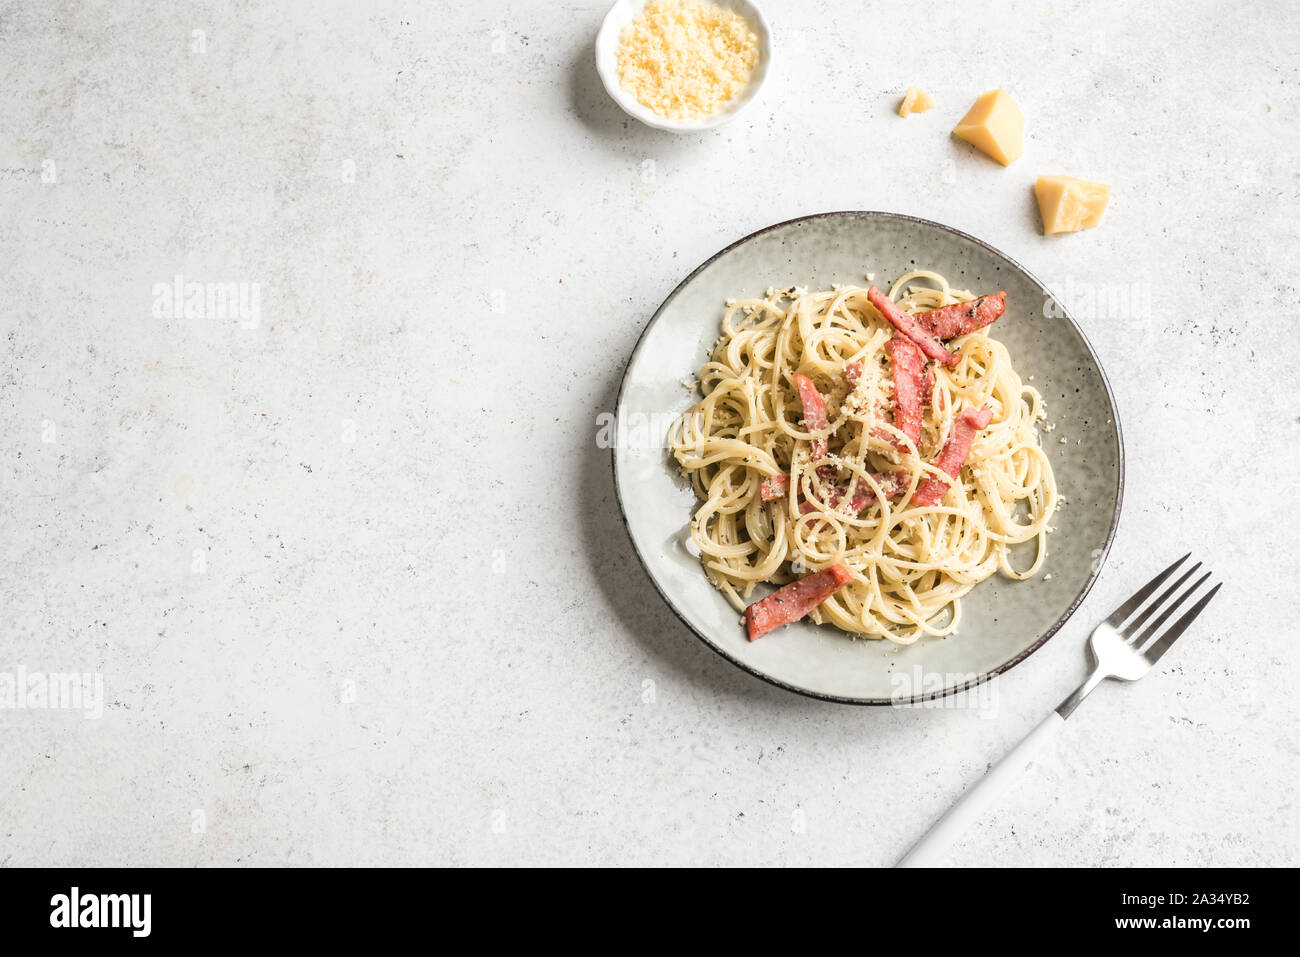 Les pâtes Carbonara, spaghetti avec bacon, oeufs durs, fromage parmesan et sauce à la crème. La cuisine traditionnelle italienne. Pasta alla carbonara, vue du dessus, copiez sp Banque D'Images